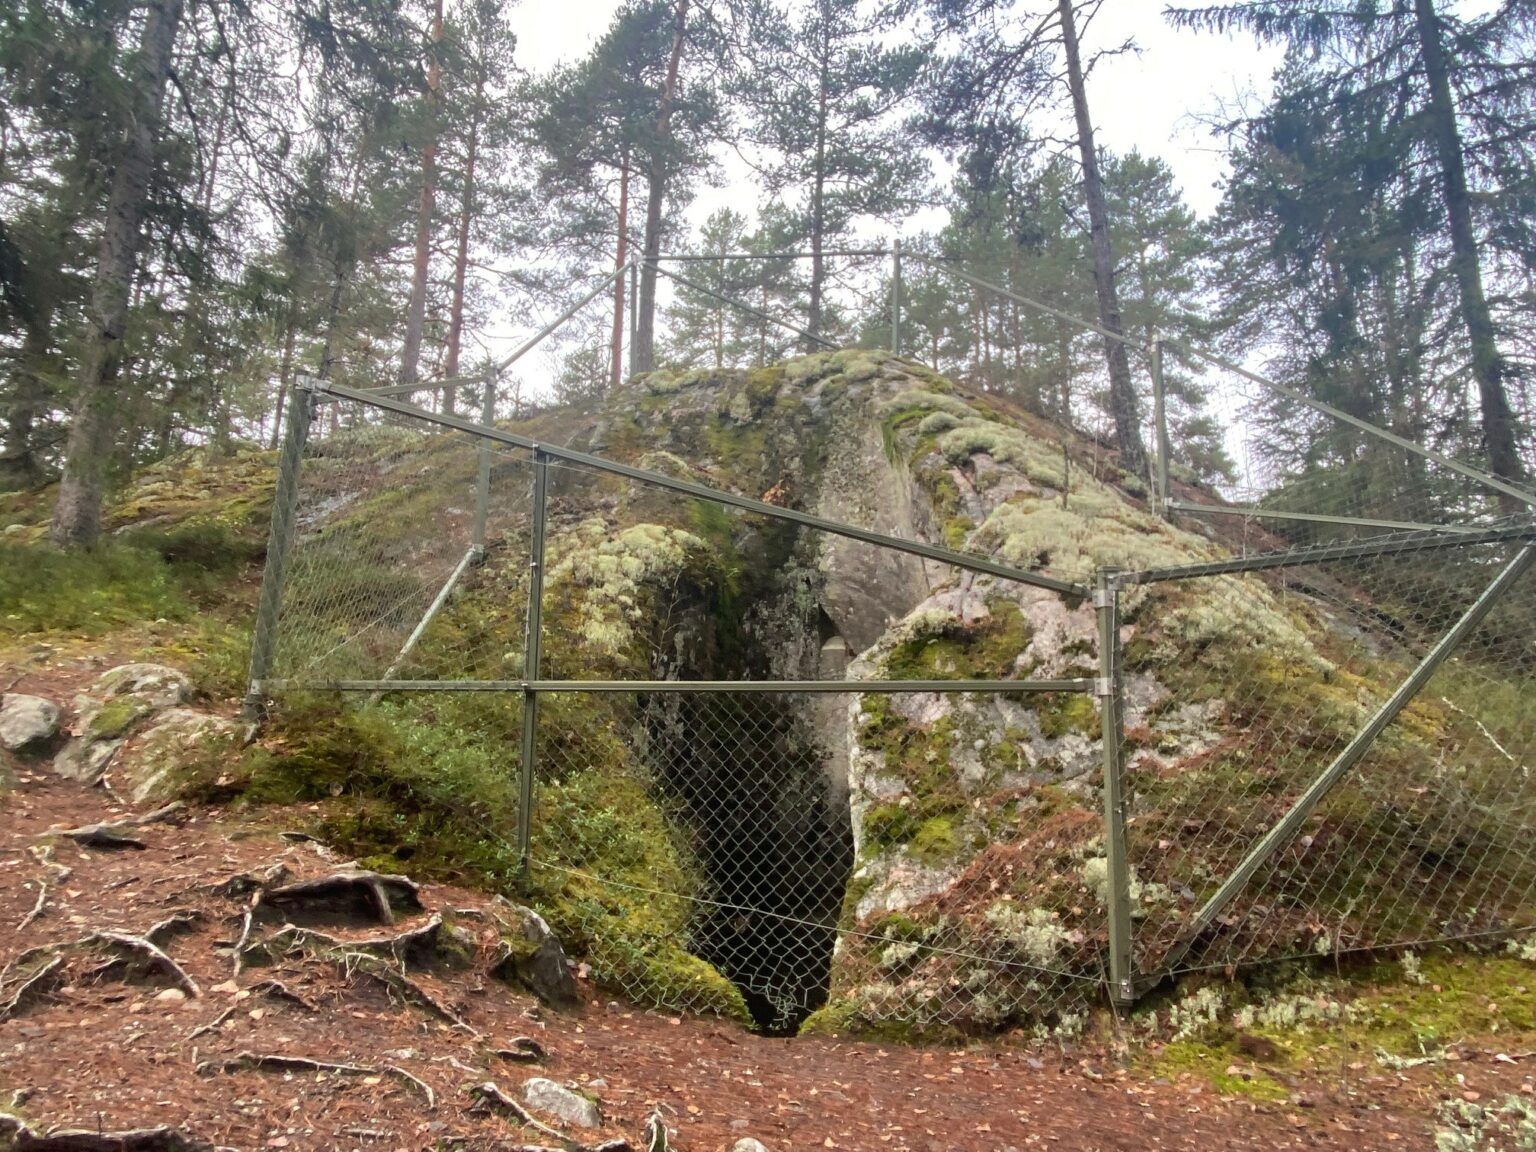 En stor mosstäckt klippa har en stor öppning ner i jorden. Klippan är omgiven av ett högt grönt staket för att skydda besökare från att falla ner.